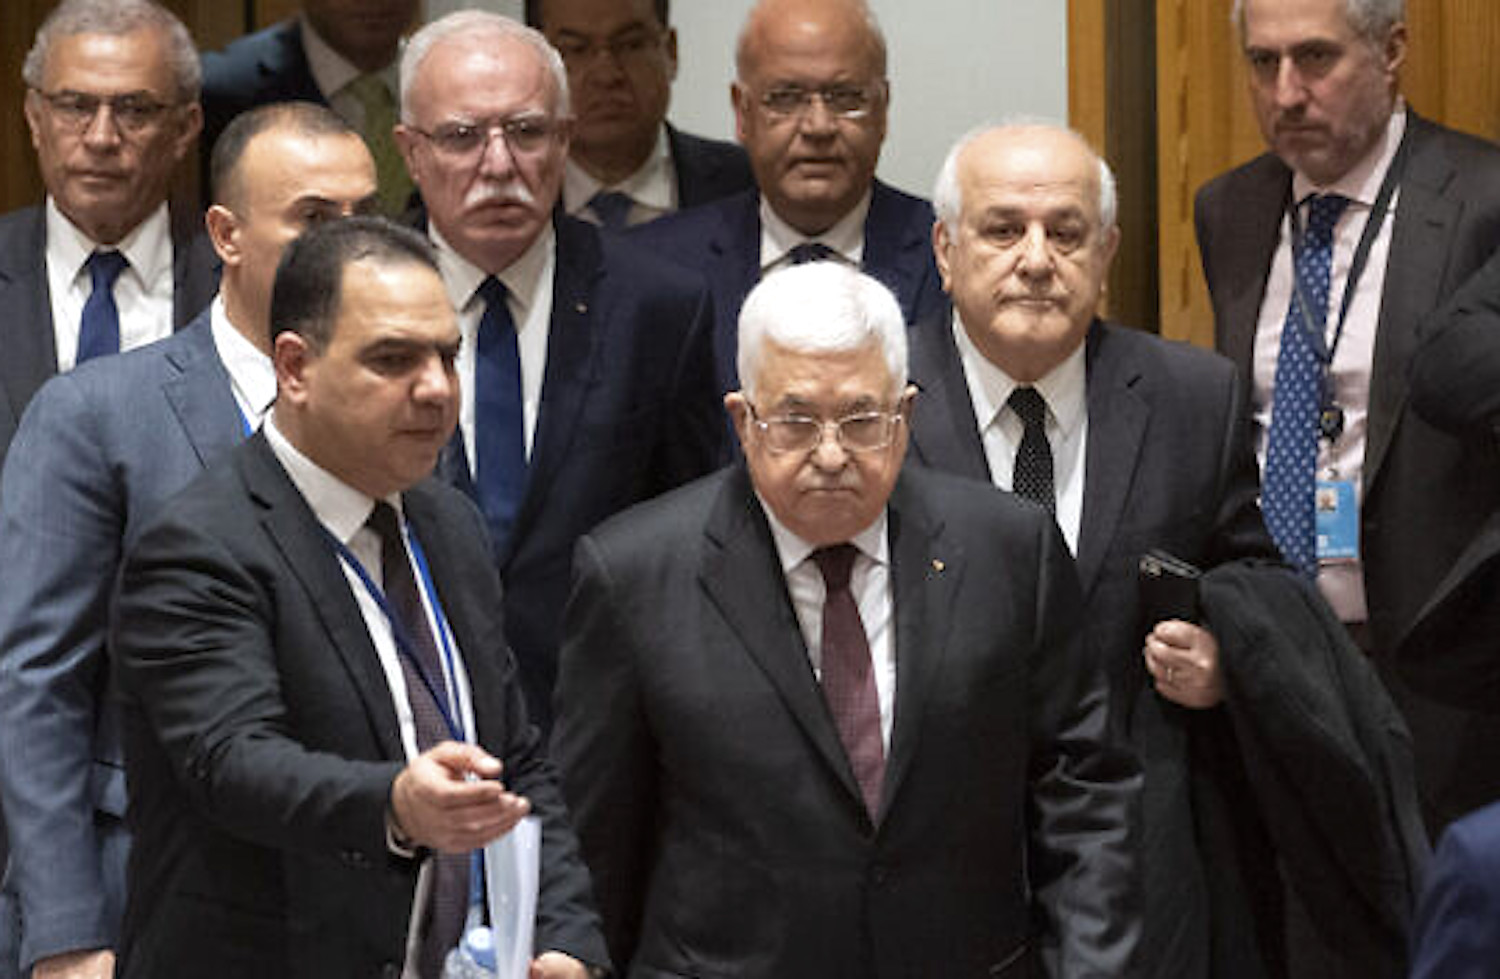 PAâs Abbas spends lavishly on family, cronies  at 2022 World Cup